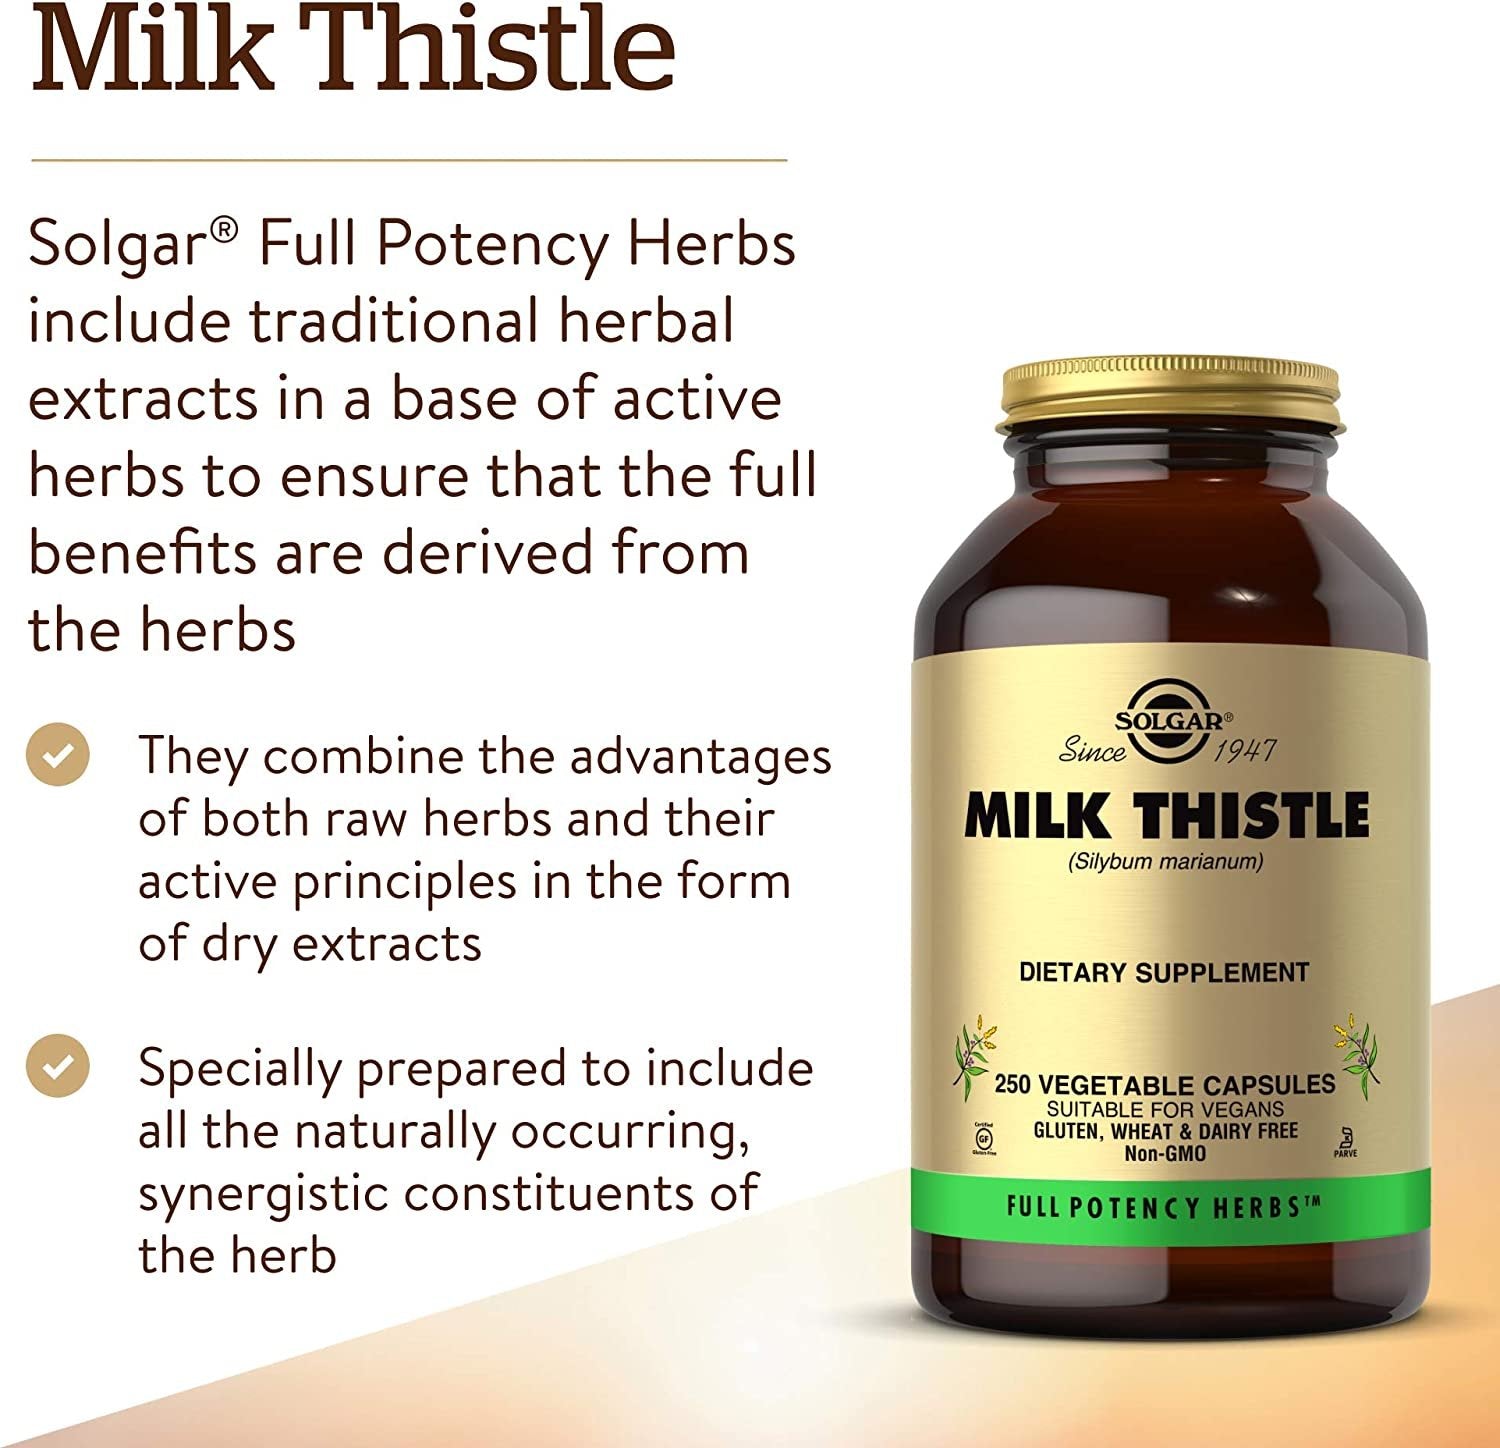 Solgar - Full Potency Milk Thistle, 250 Vegetable Capsules